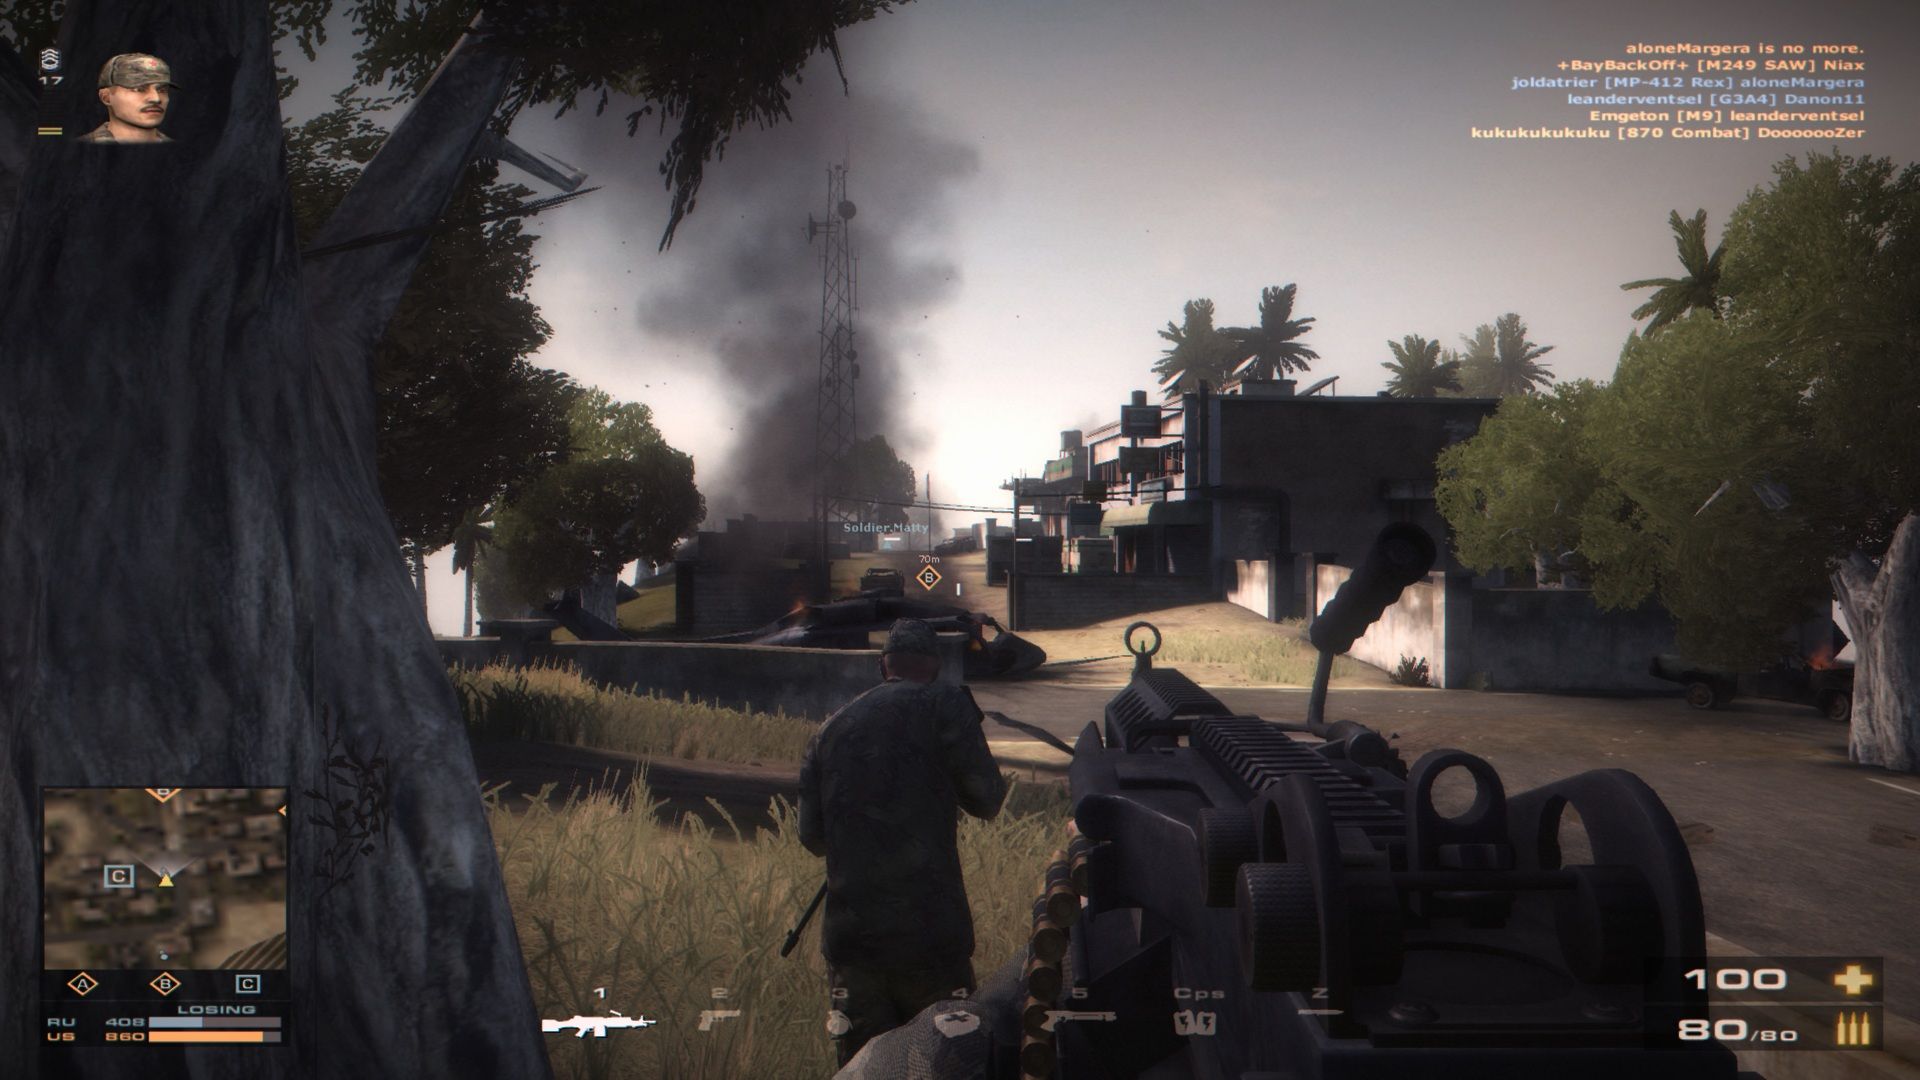 shooter-mmo-games-battlefield-play4free-gunner-screenshot.jpg